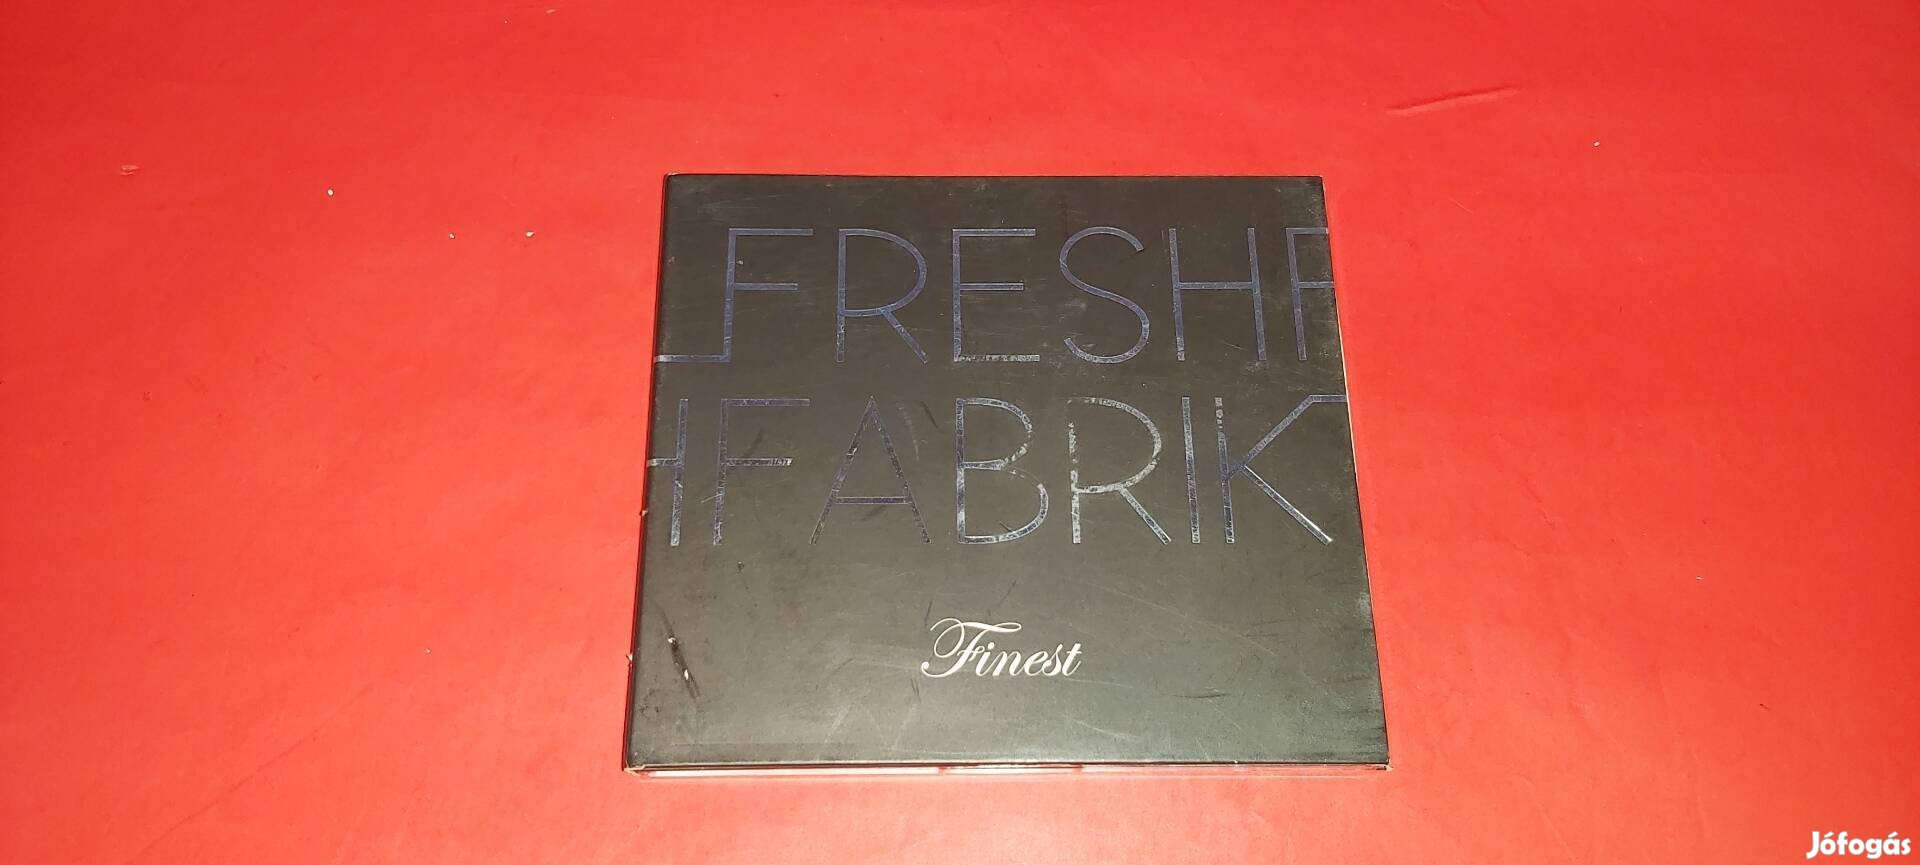 Freshfabrik Finest Cd 2006